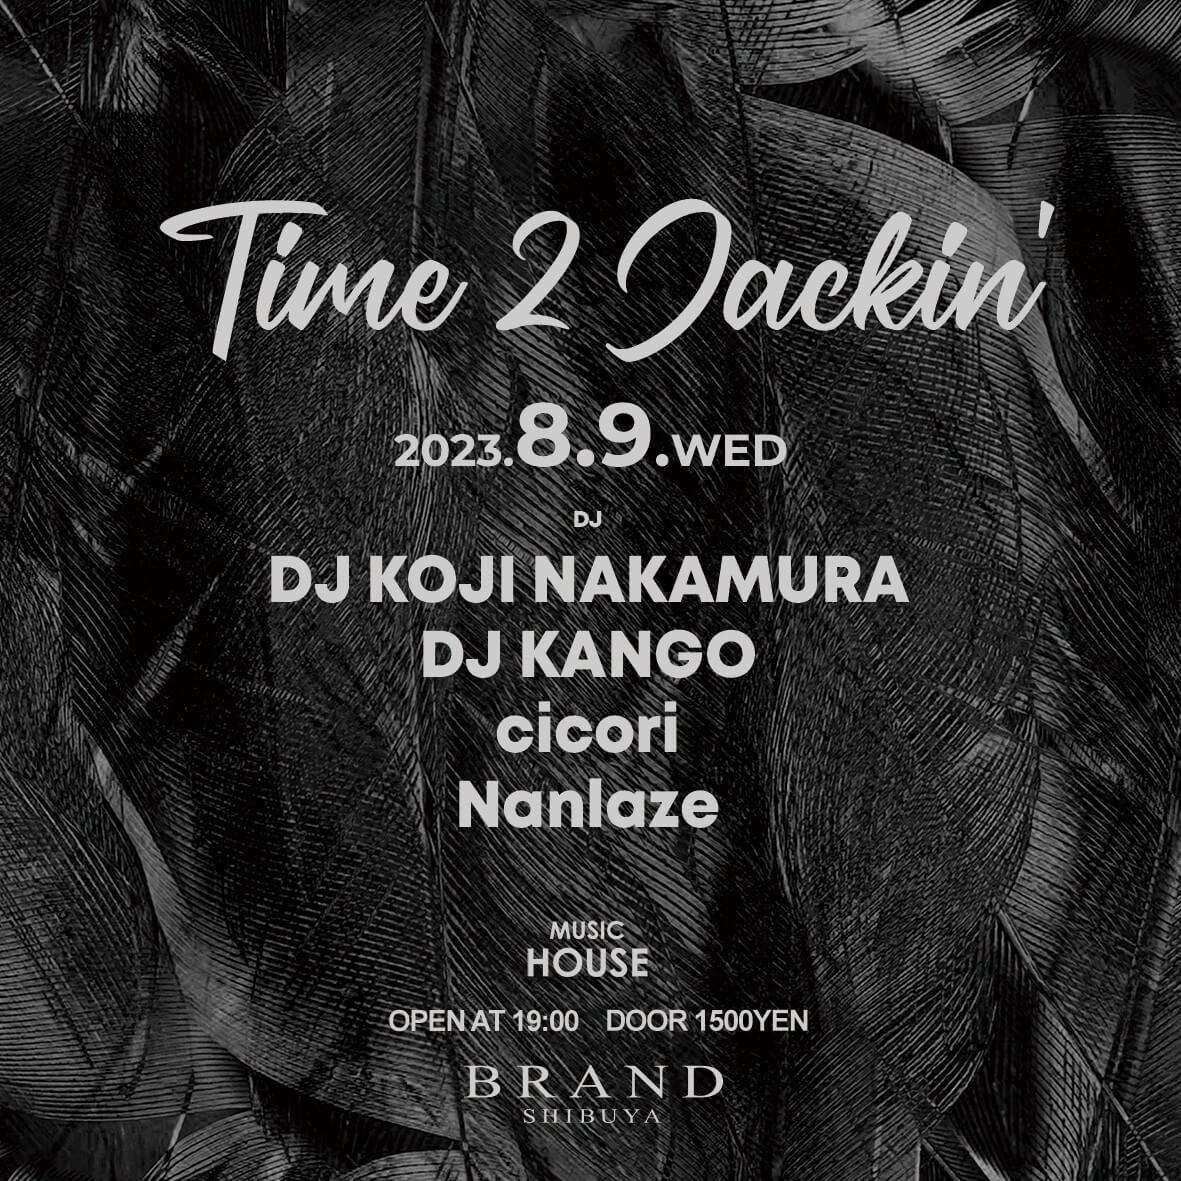 Time 2 Jackin' 2023年08月09日（水曜日）に渋谷 クラブのBRAND SHIBUYAで開催されるHOUSEイベント